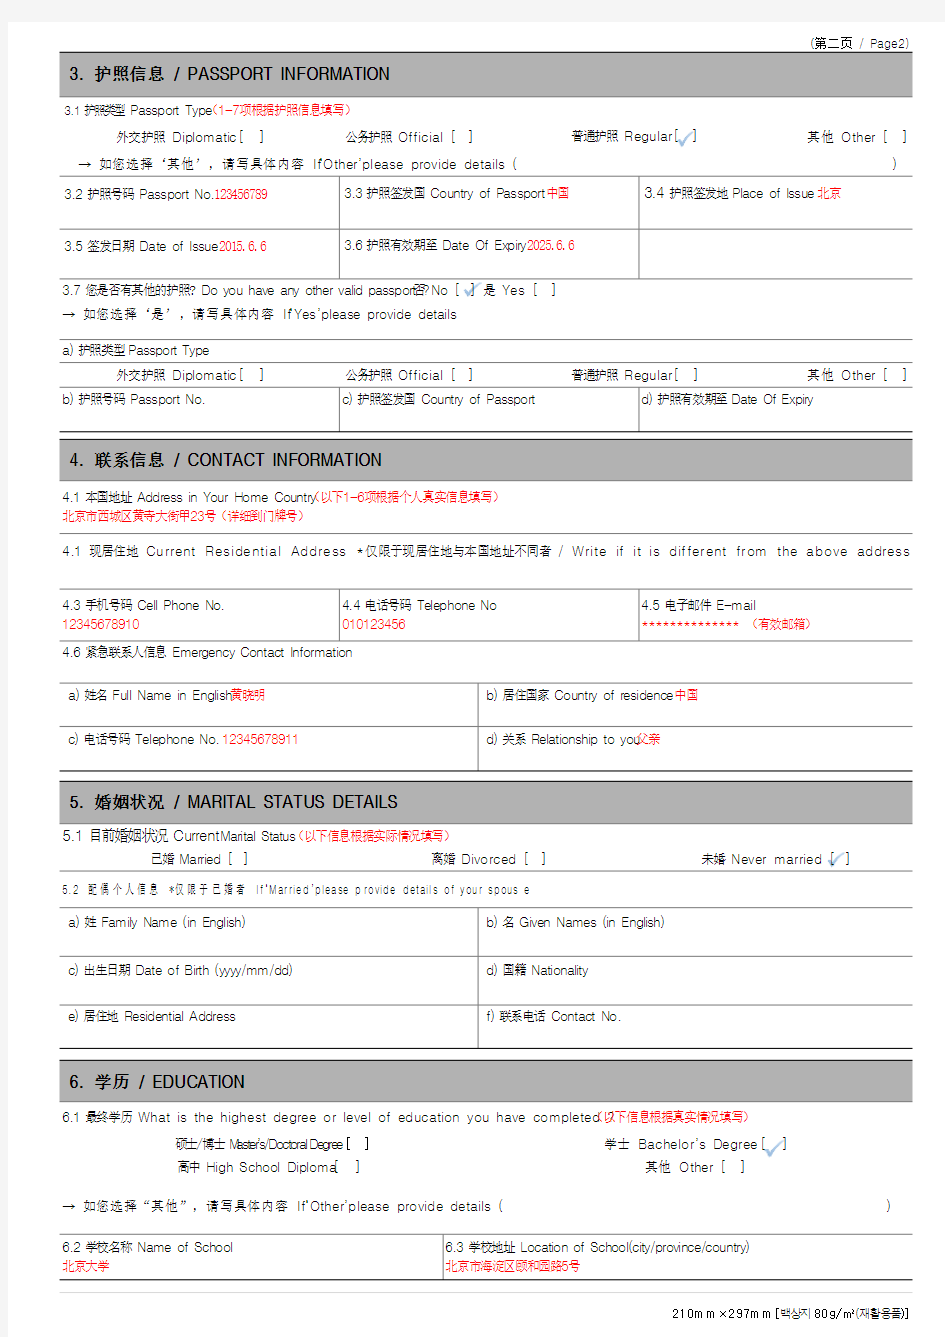 韩国签证申请表模板